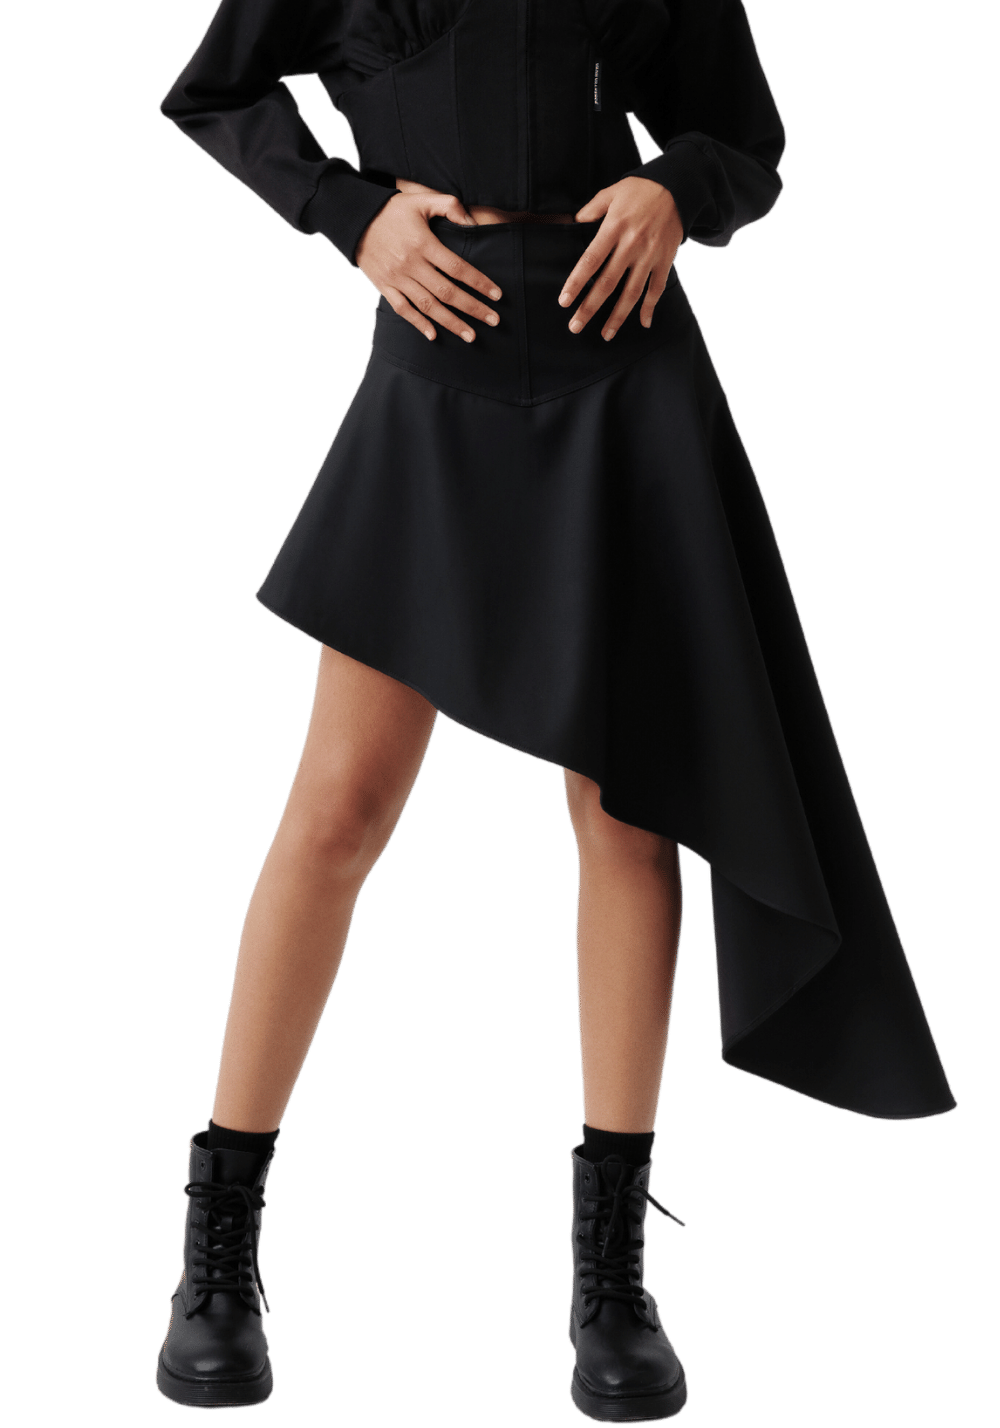 Asymmetrical Midi Skirt - PSYLOS 1, Asymmetrical Midi Skirt, Dress/Skirt, VANN VALRENCÉ, PSYLOS 1